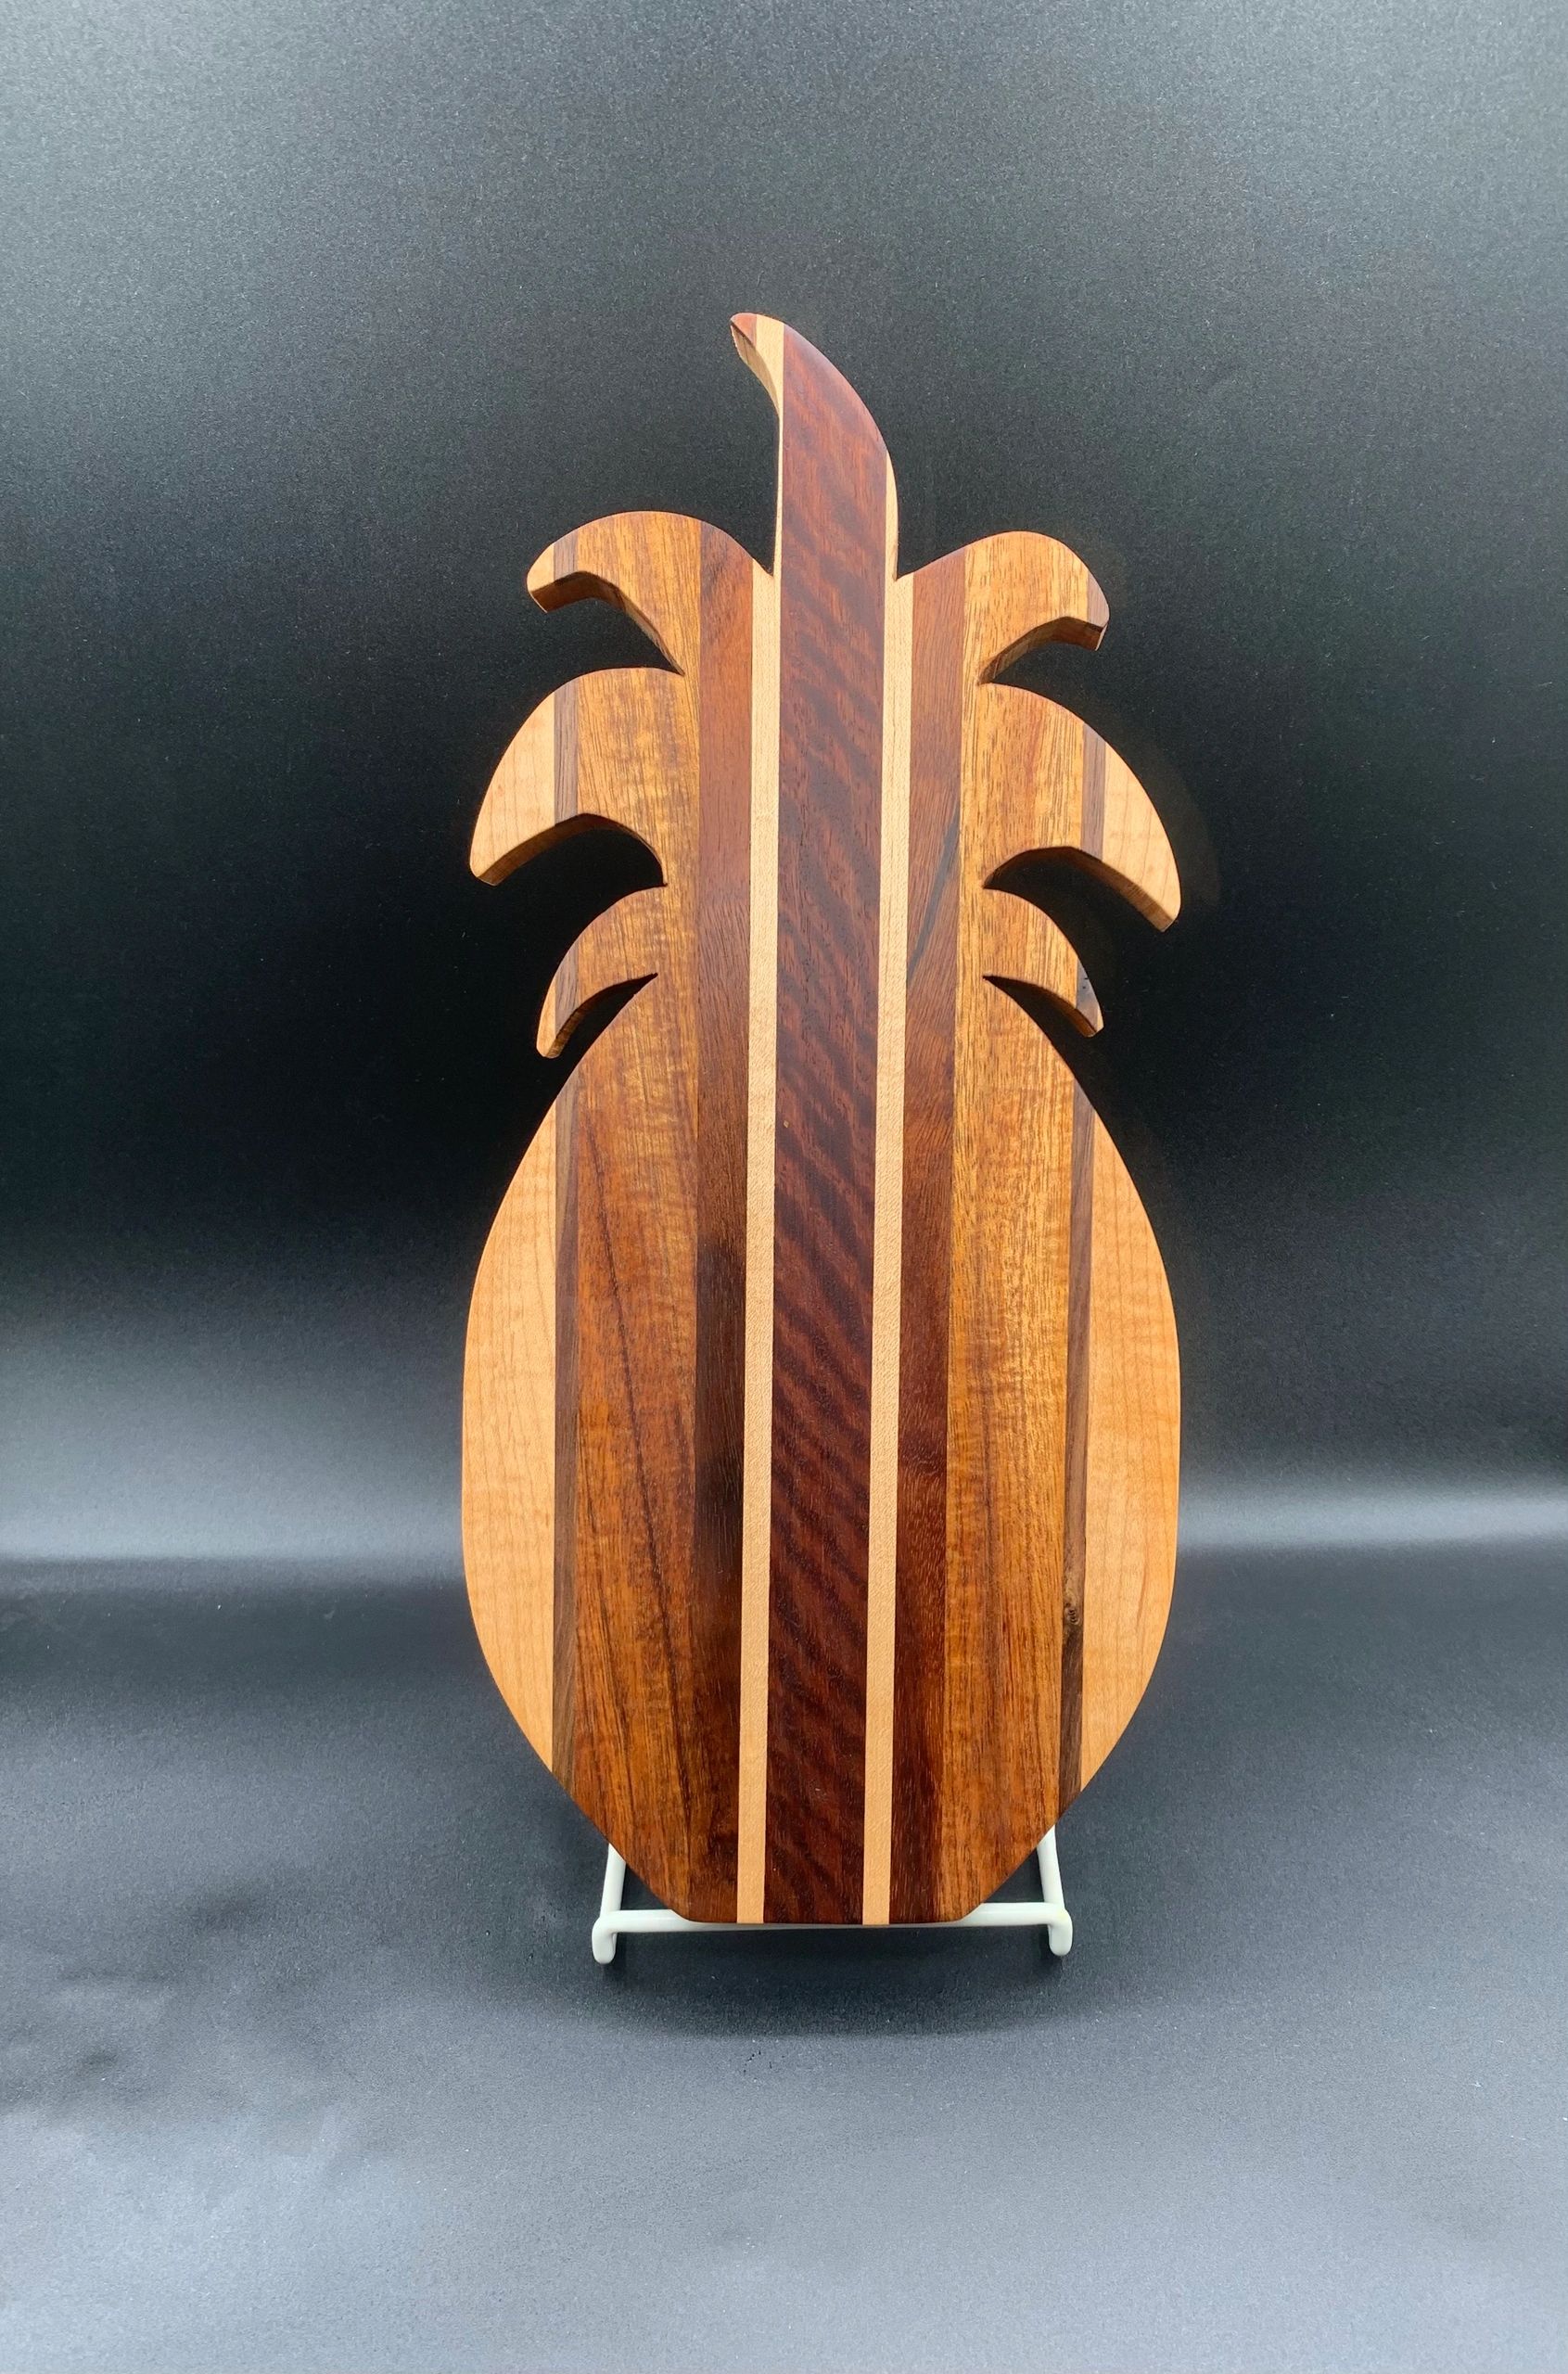 Beautiful Koa pineapple cutting board